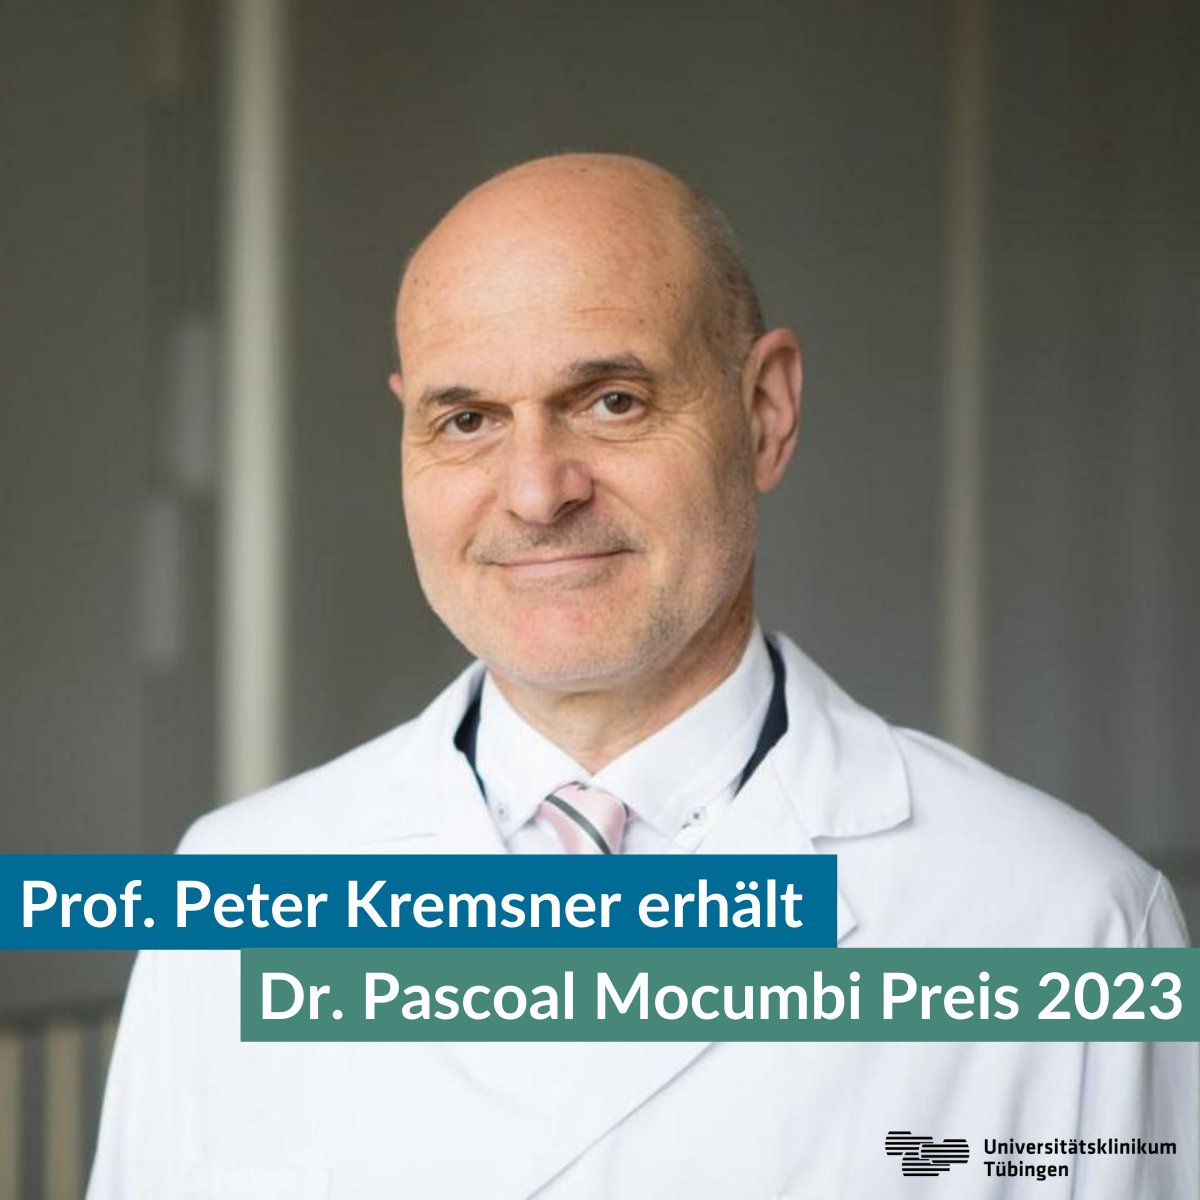 🏆 Letzte Woche wurde Prof. Peter Kremsner im Rahmen des @EDCTP-Forums für sein #Lebenswerk ausgezeichnet. Er erhielt den Dr. Pascoal Mocumbi Prize 2023, eine der höchsten Auszeichnungen im Bereich der #Tropenmedizin.